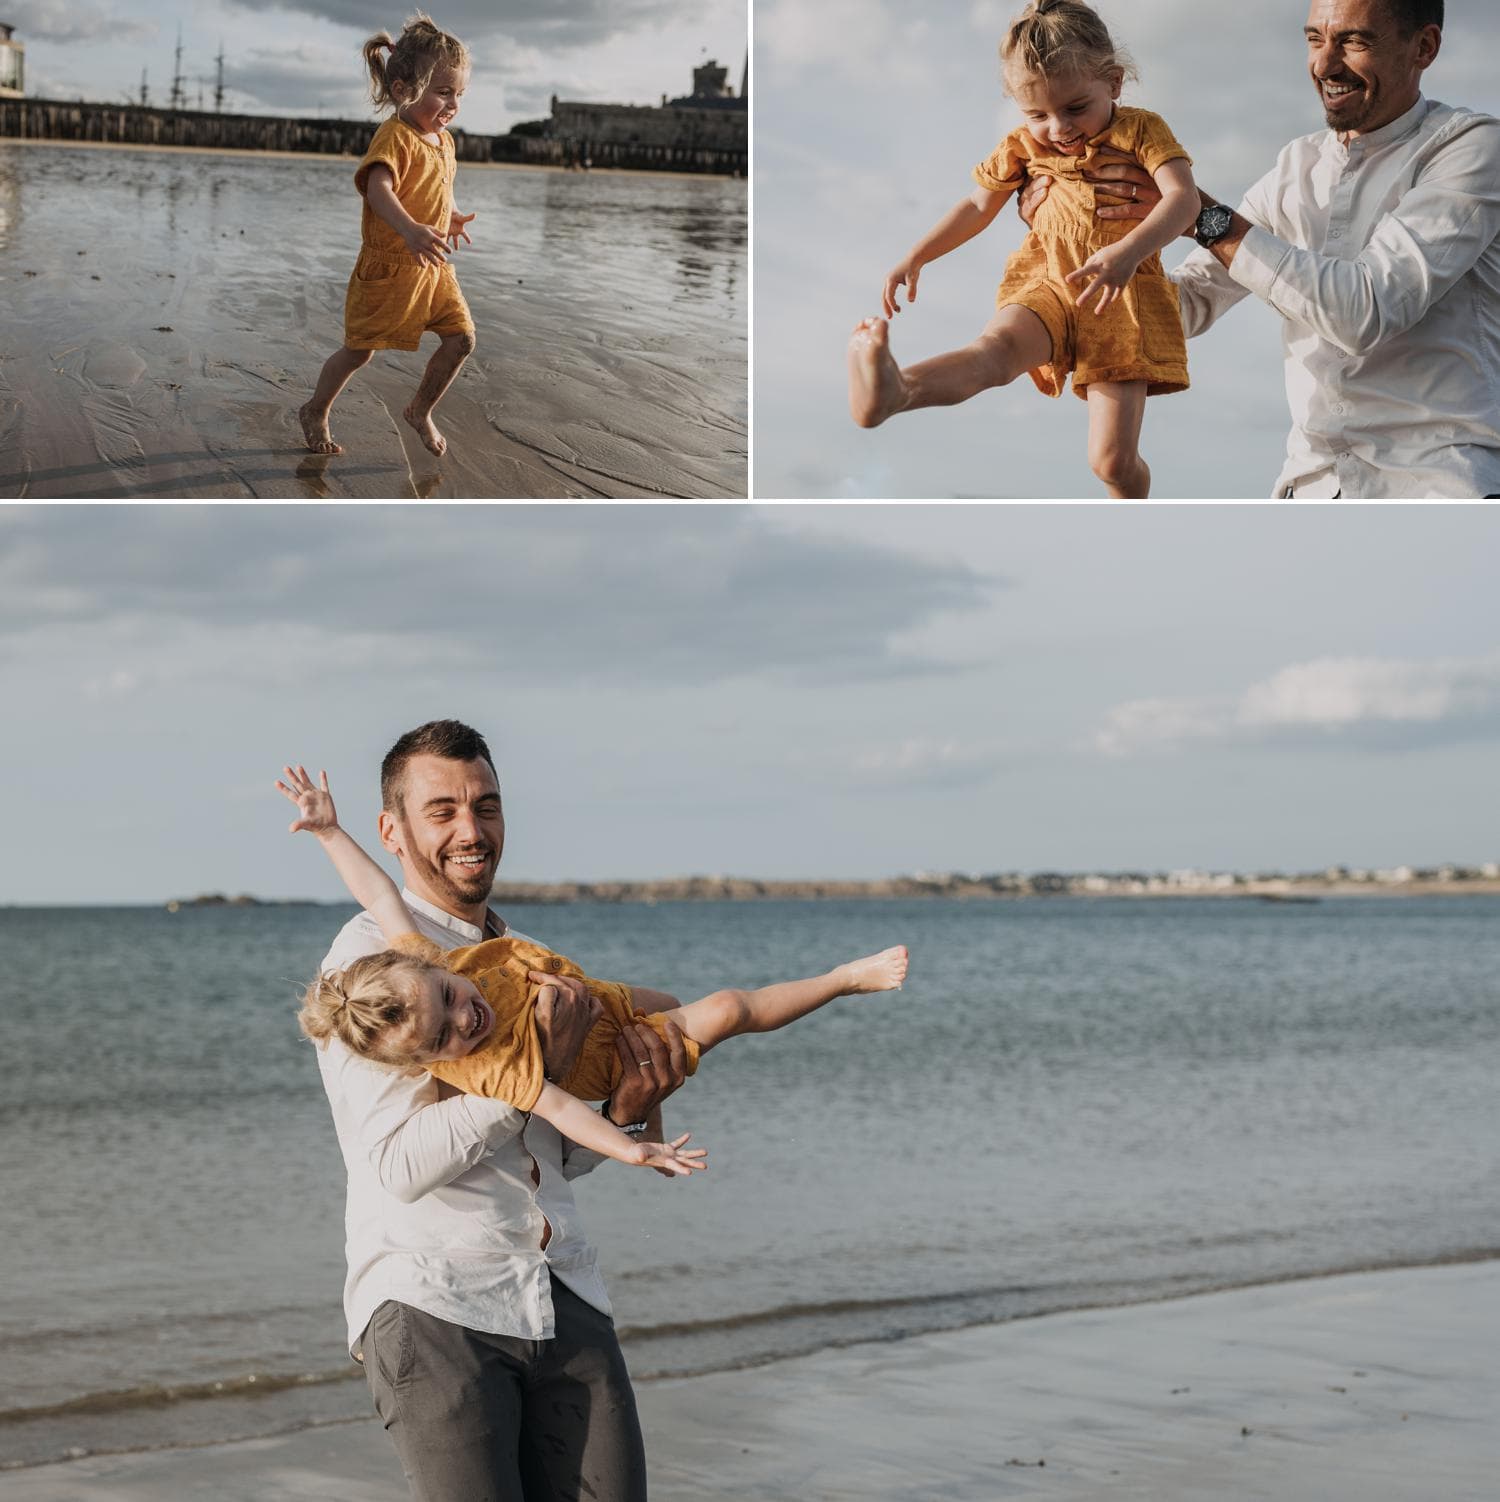 Des photos ludiques et spontanées de moments de bonheur partagés en famille à la plage